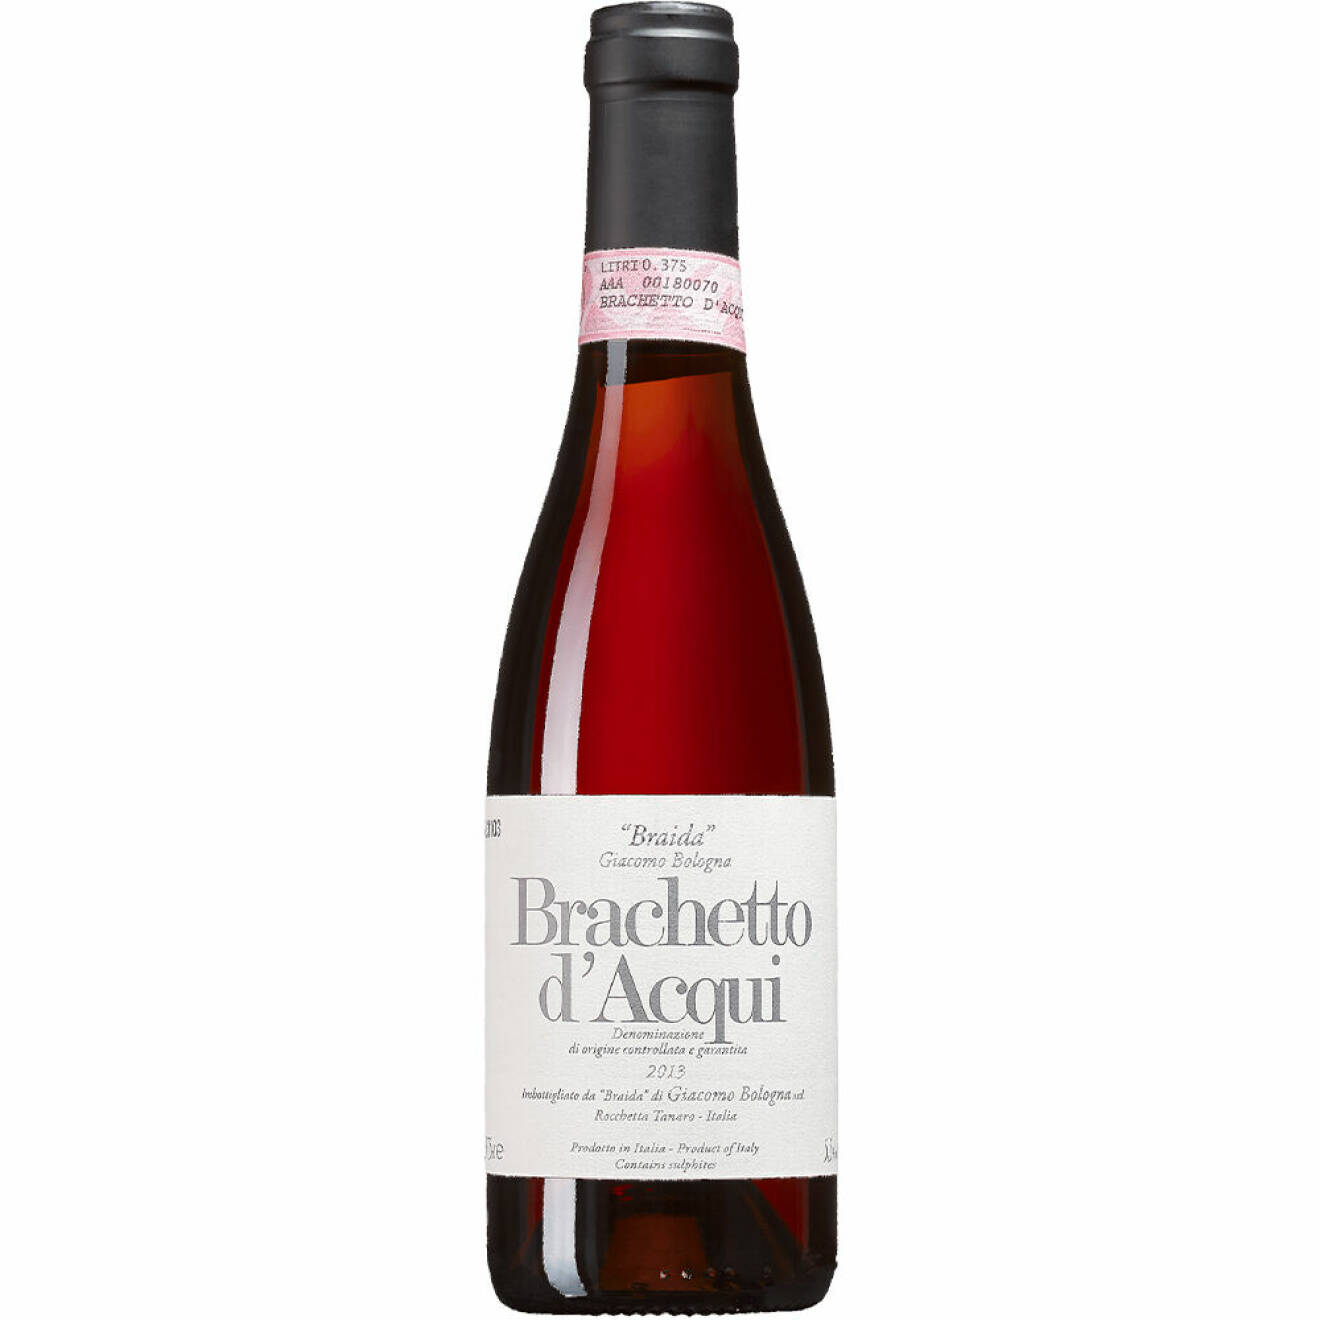 Brachetto d’Acqui Braida 2021, Italien, Piemonte (6260) 99 kr 375ml.